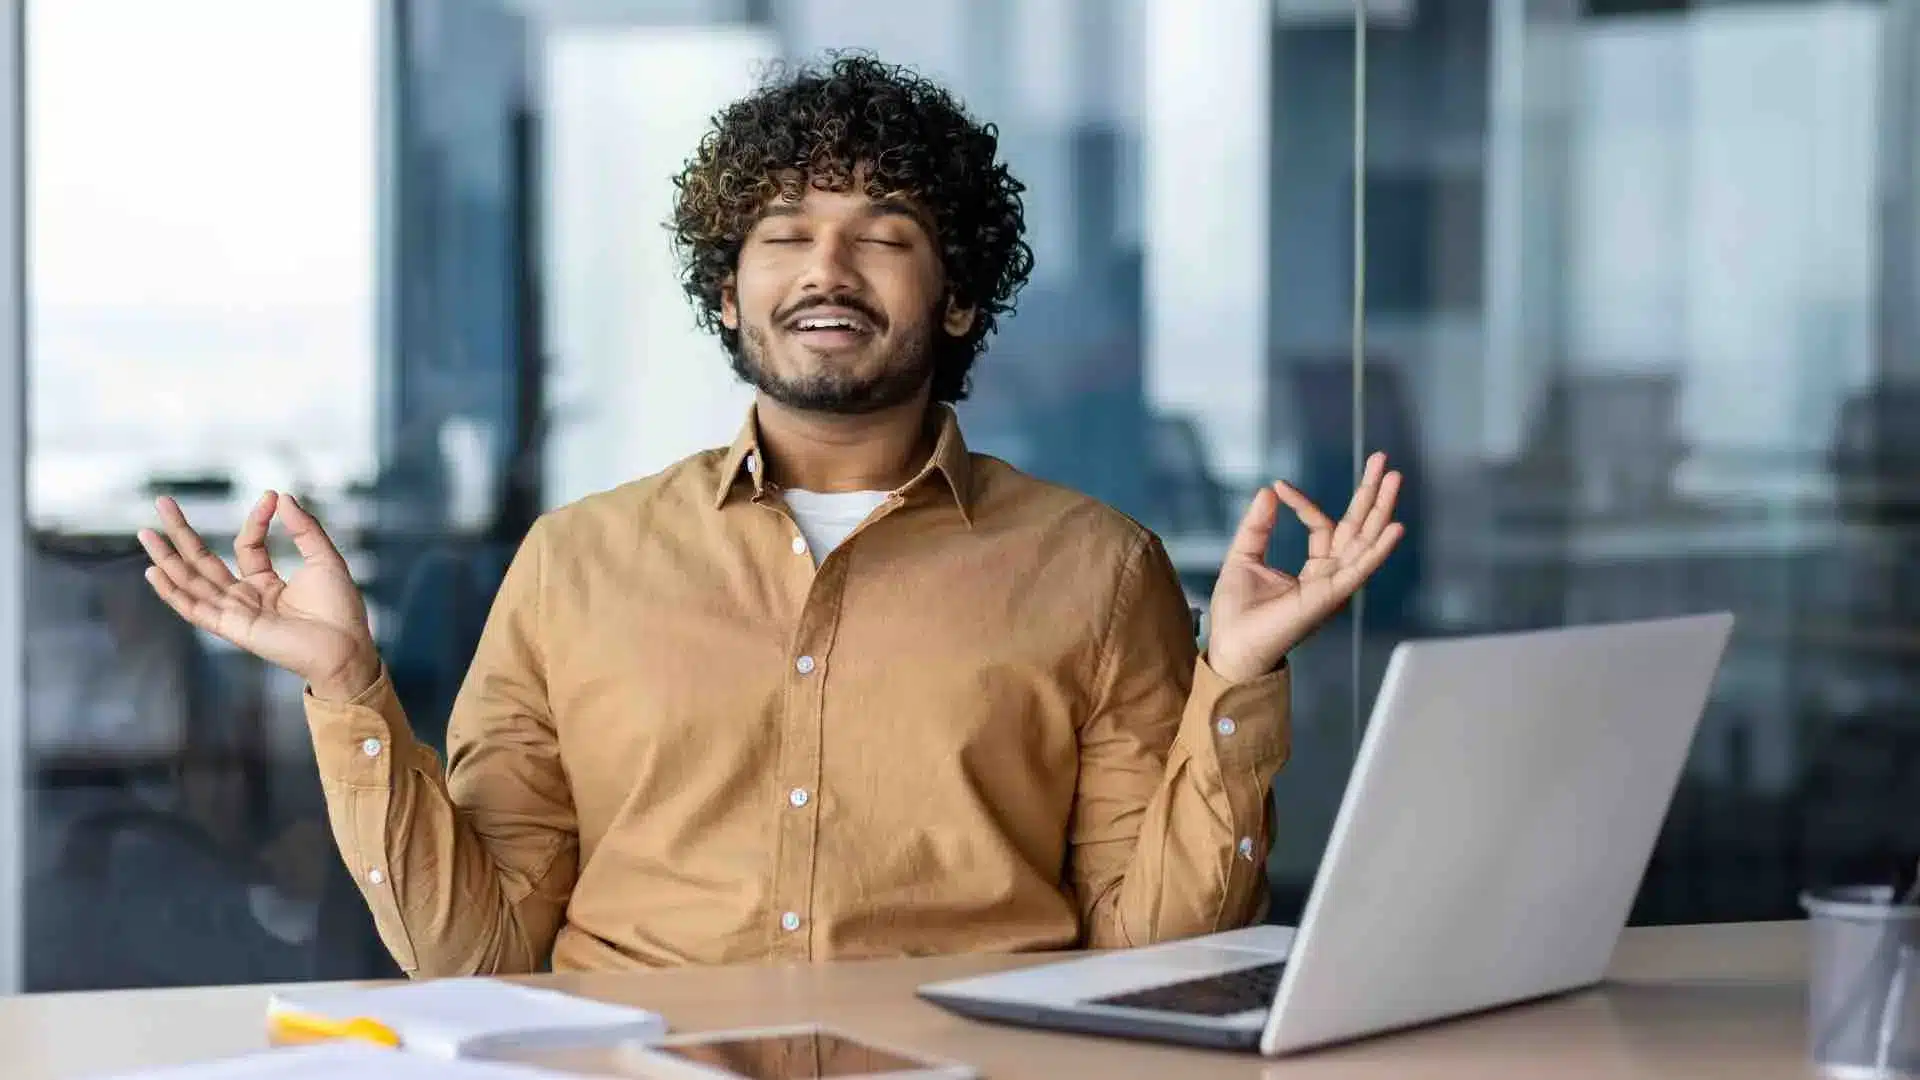 Un homme est serein devant son ordinateur, car il a investi pour son avenir professionnel